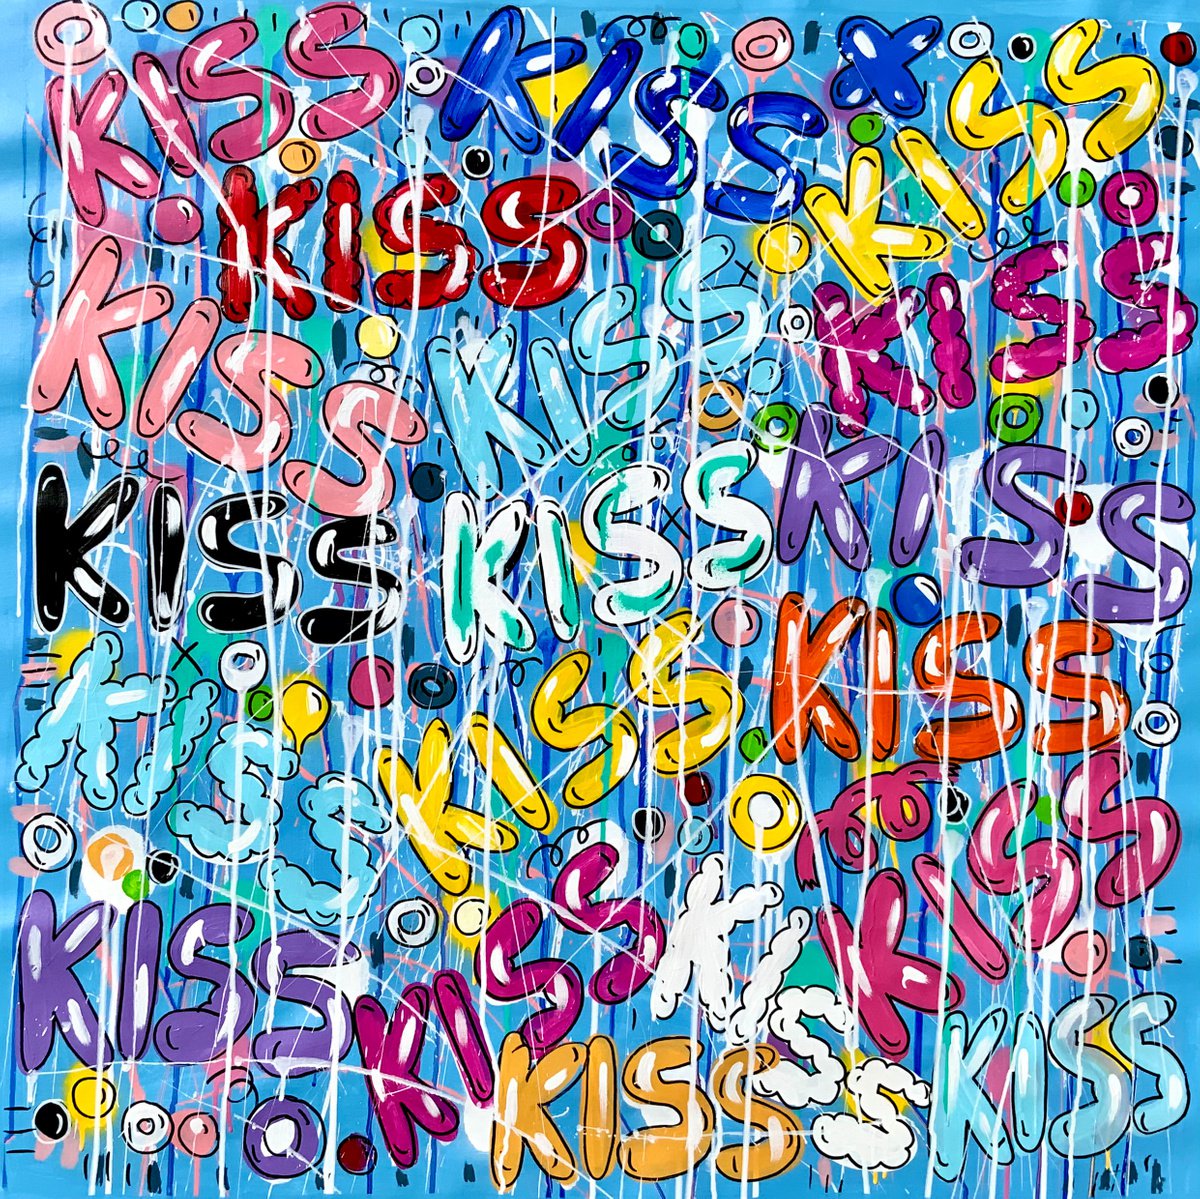 Kiss, Kiss, Kiss Me! by Mercedes Lagunas